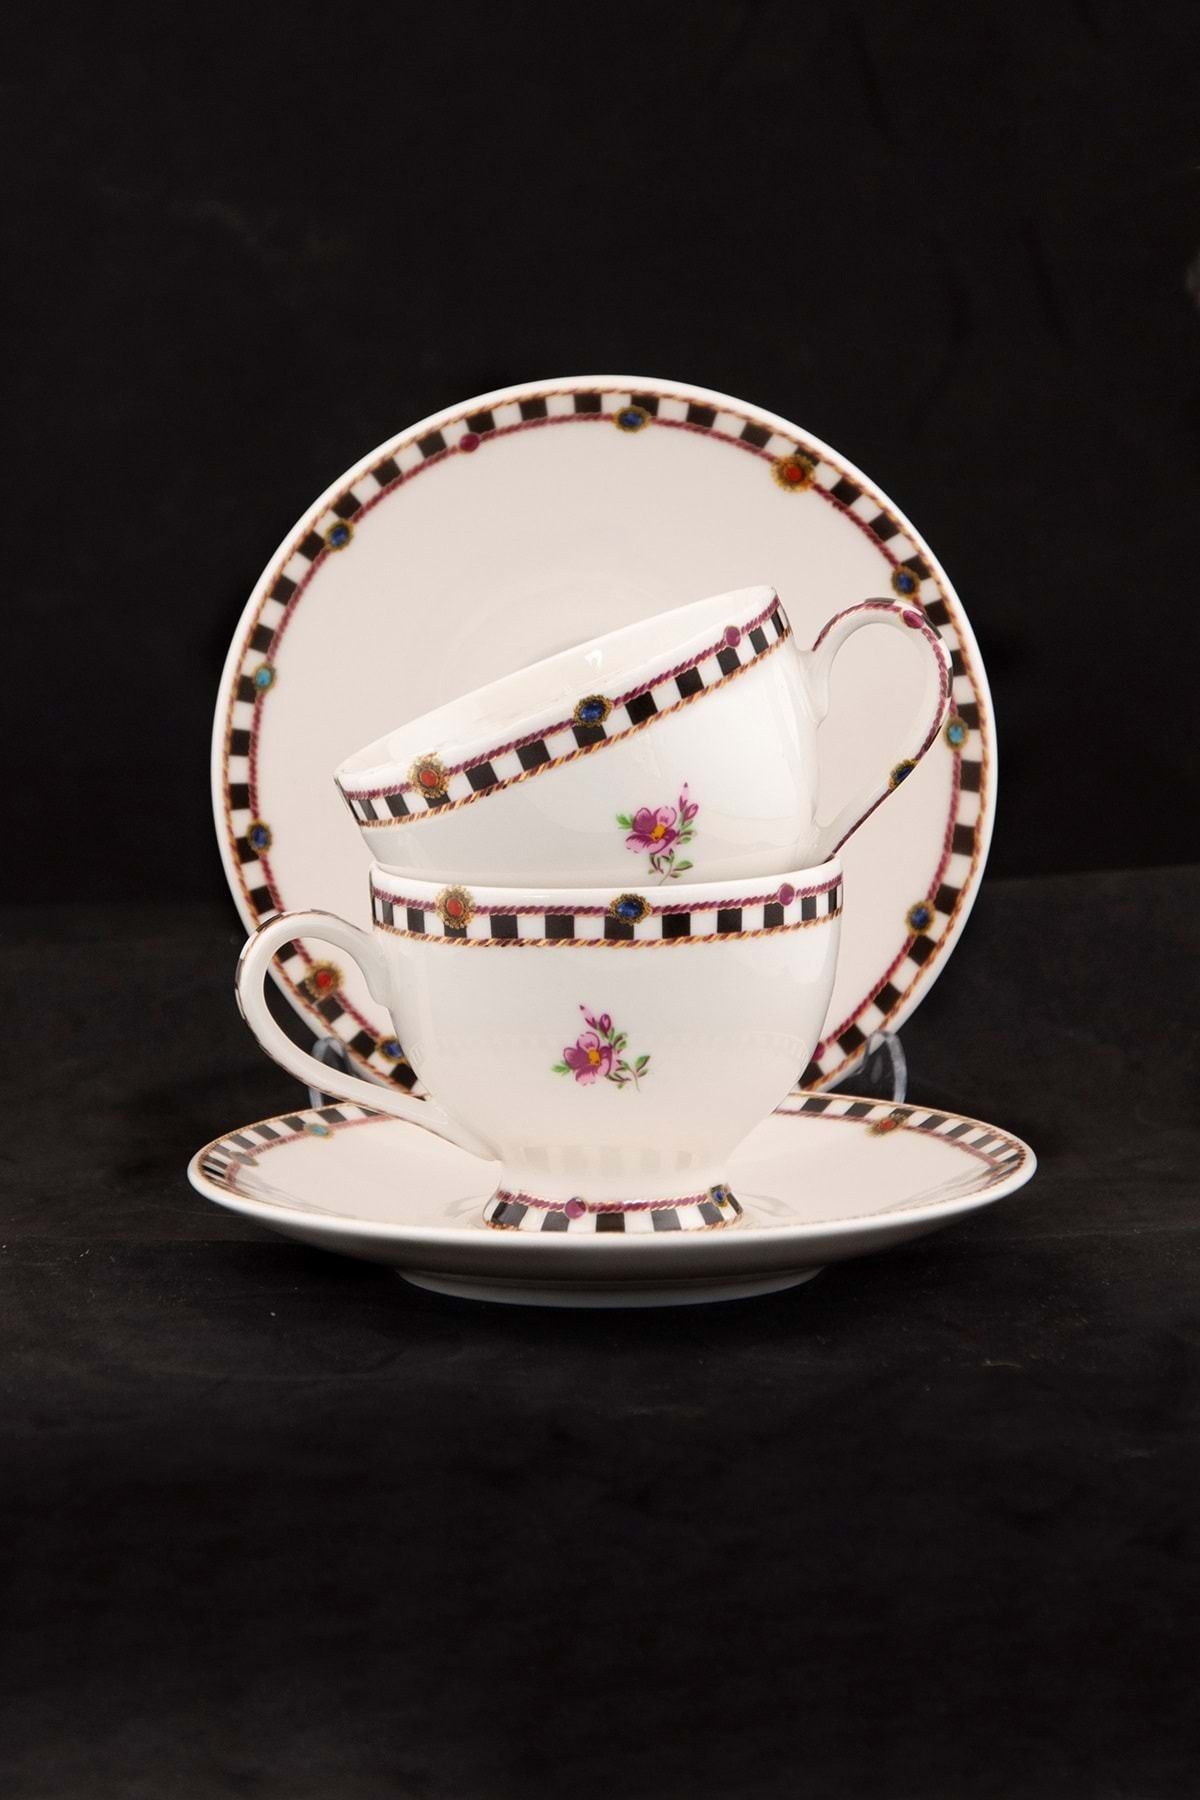 Bursa Porselen Dekor Diamonds 2 kişilik çay fincan takımı